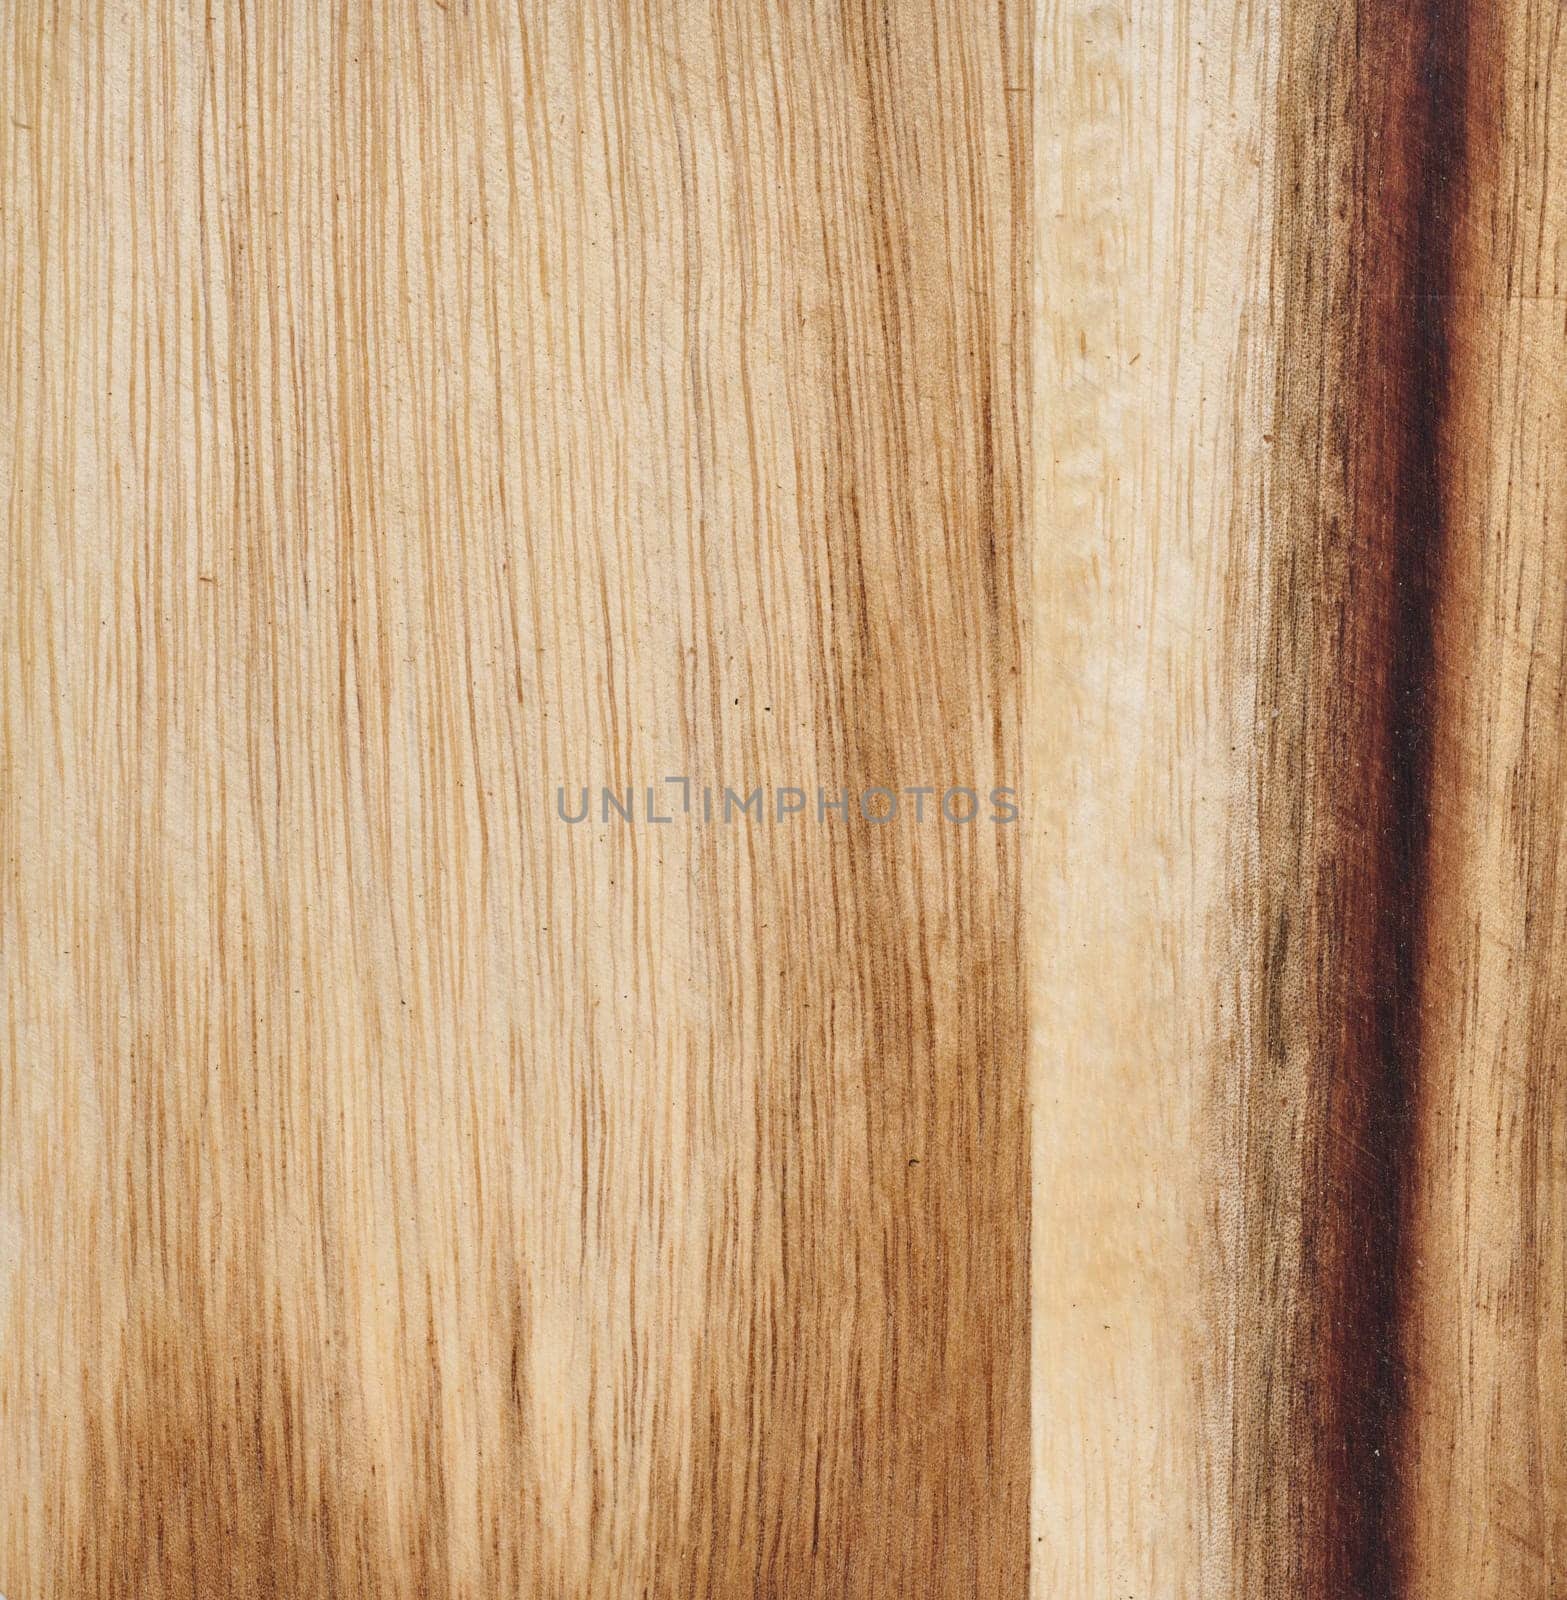 Pine wood texture, full frame